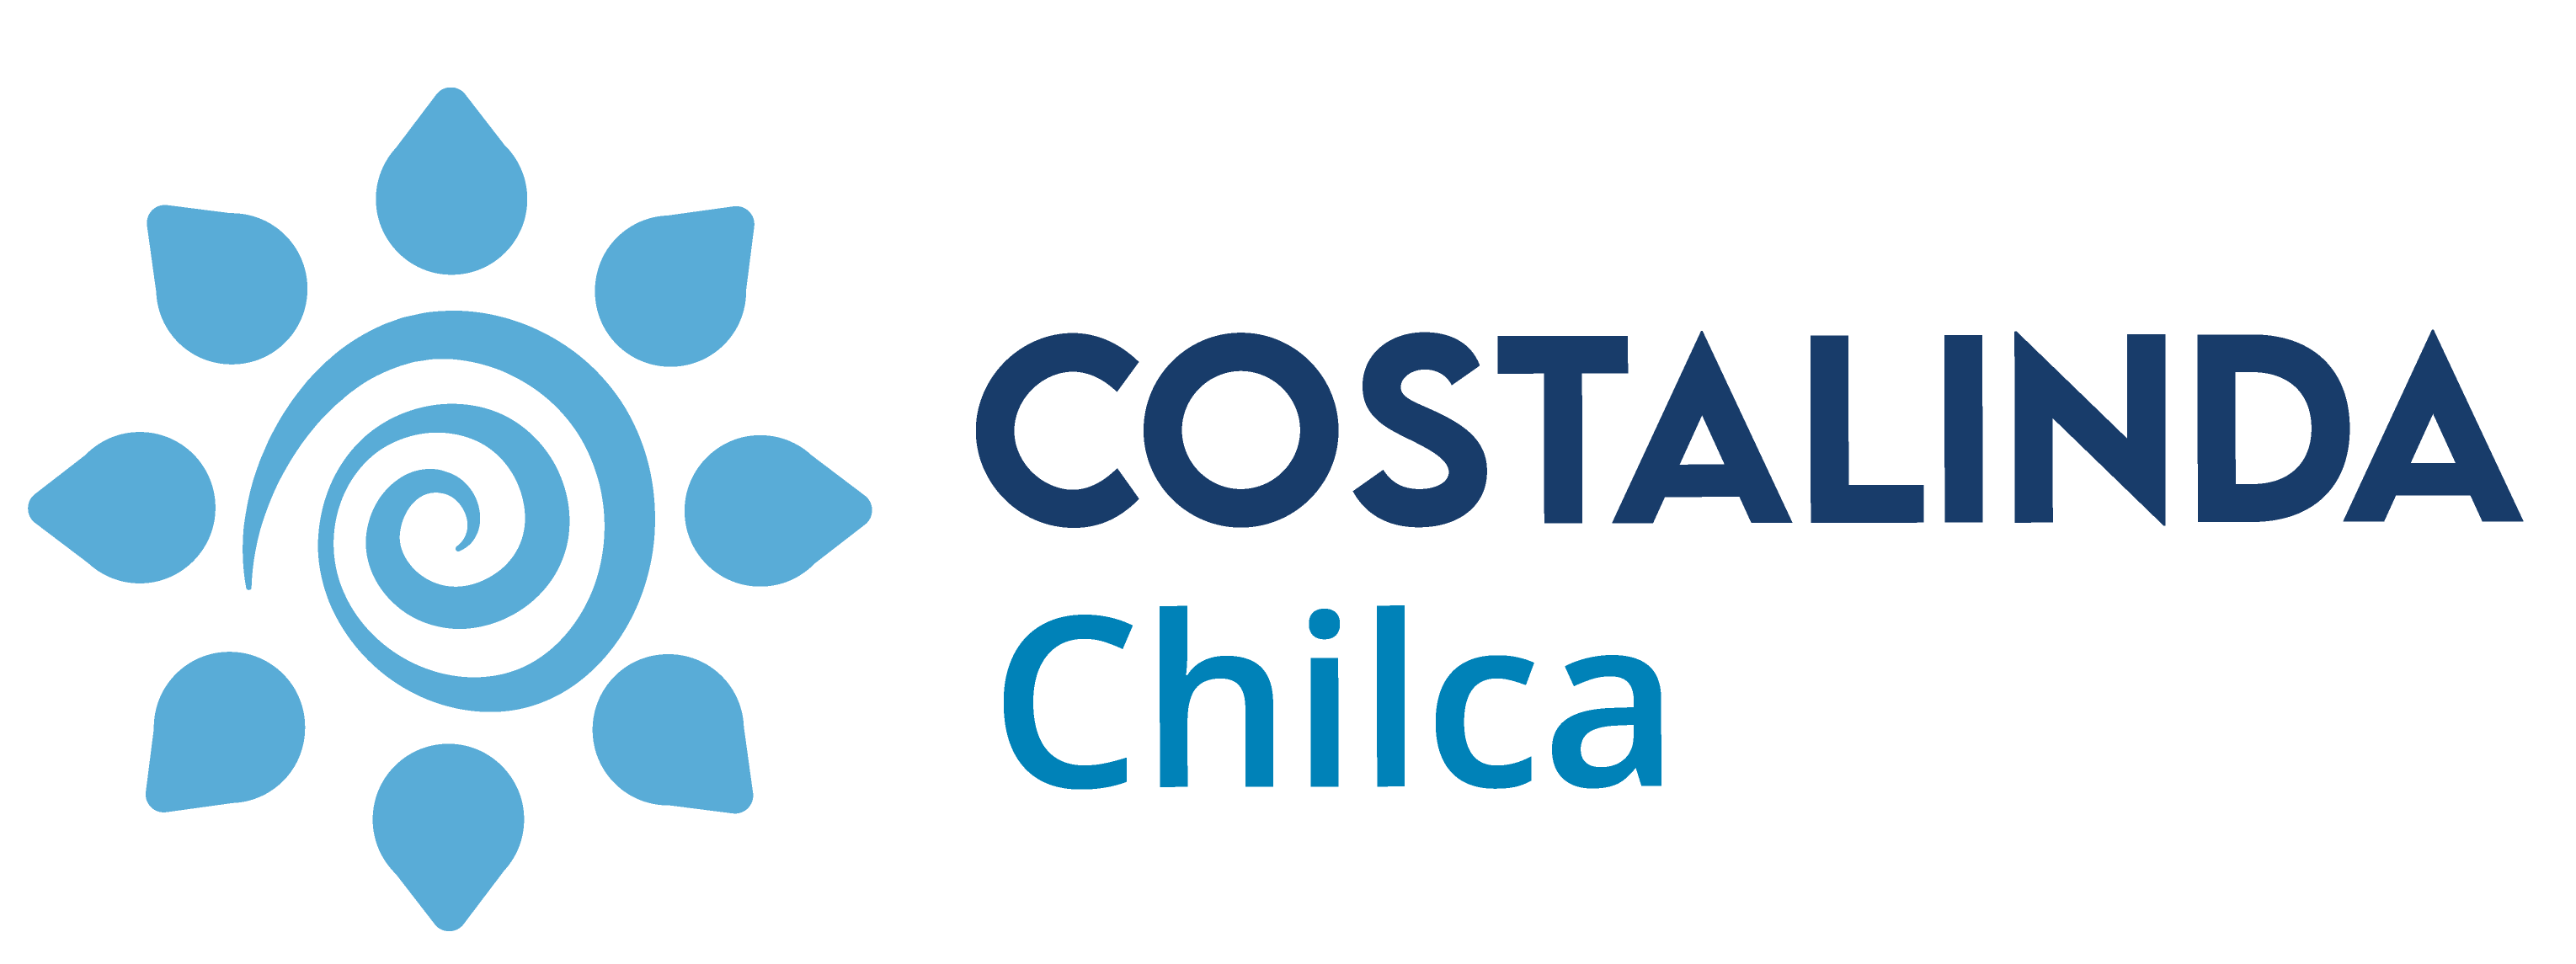 Costa Linda Chilca